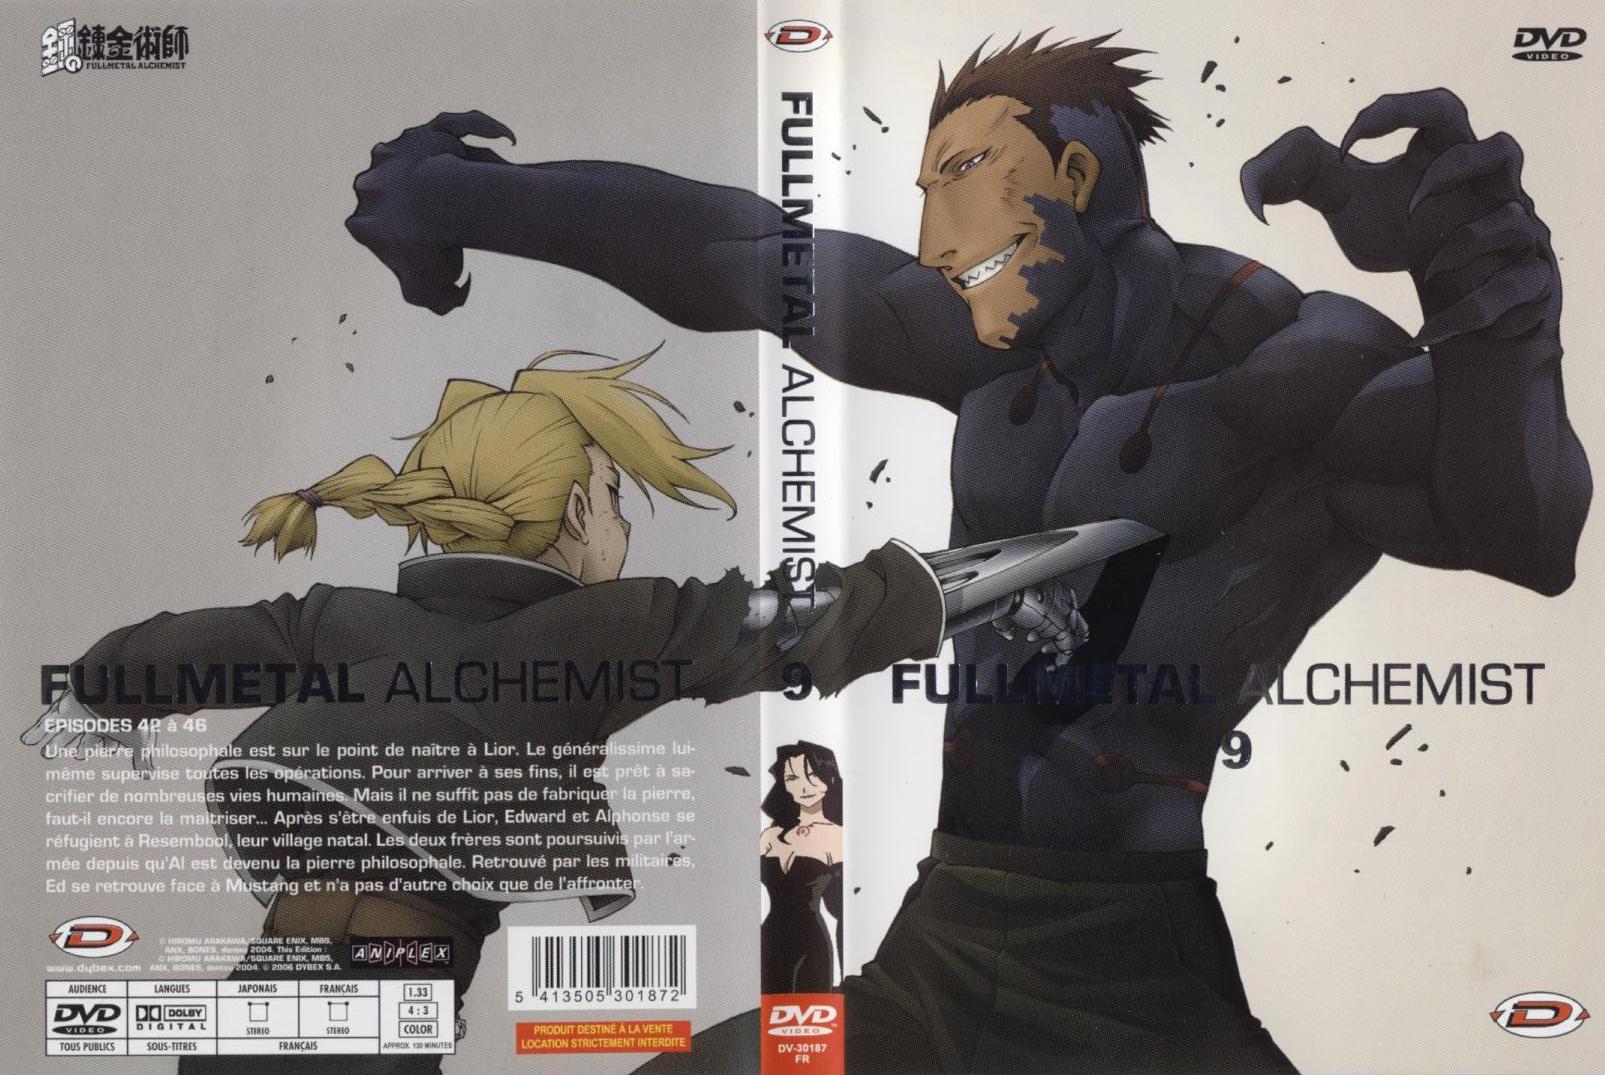 Jaquette DVD Fullmetal alchemist vol 9